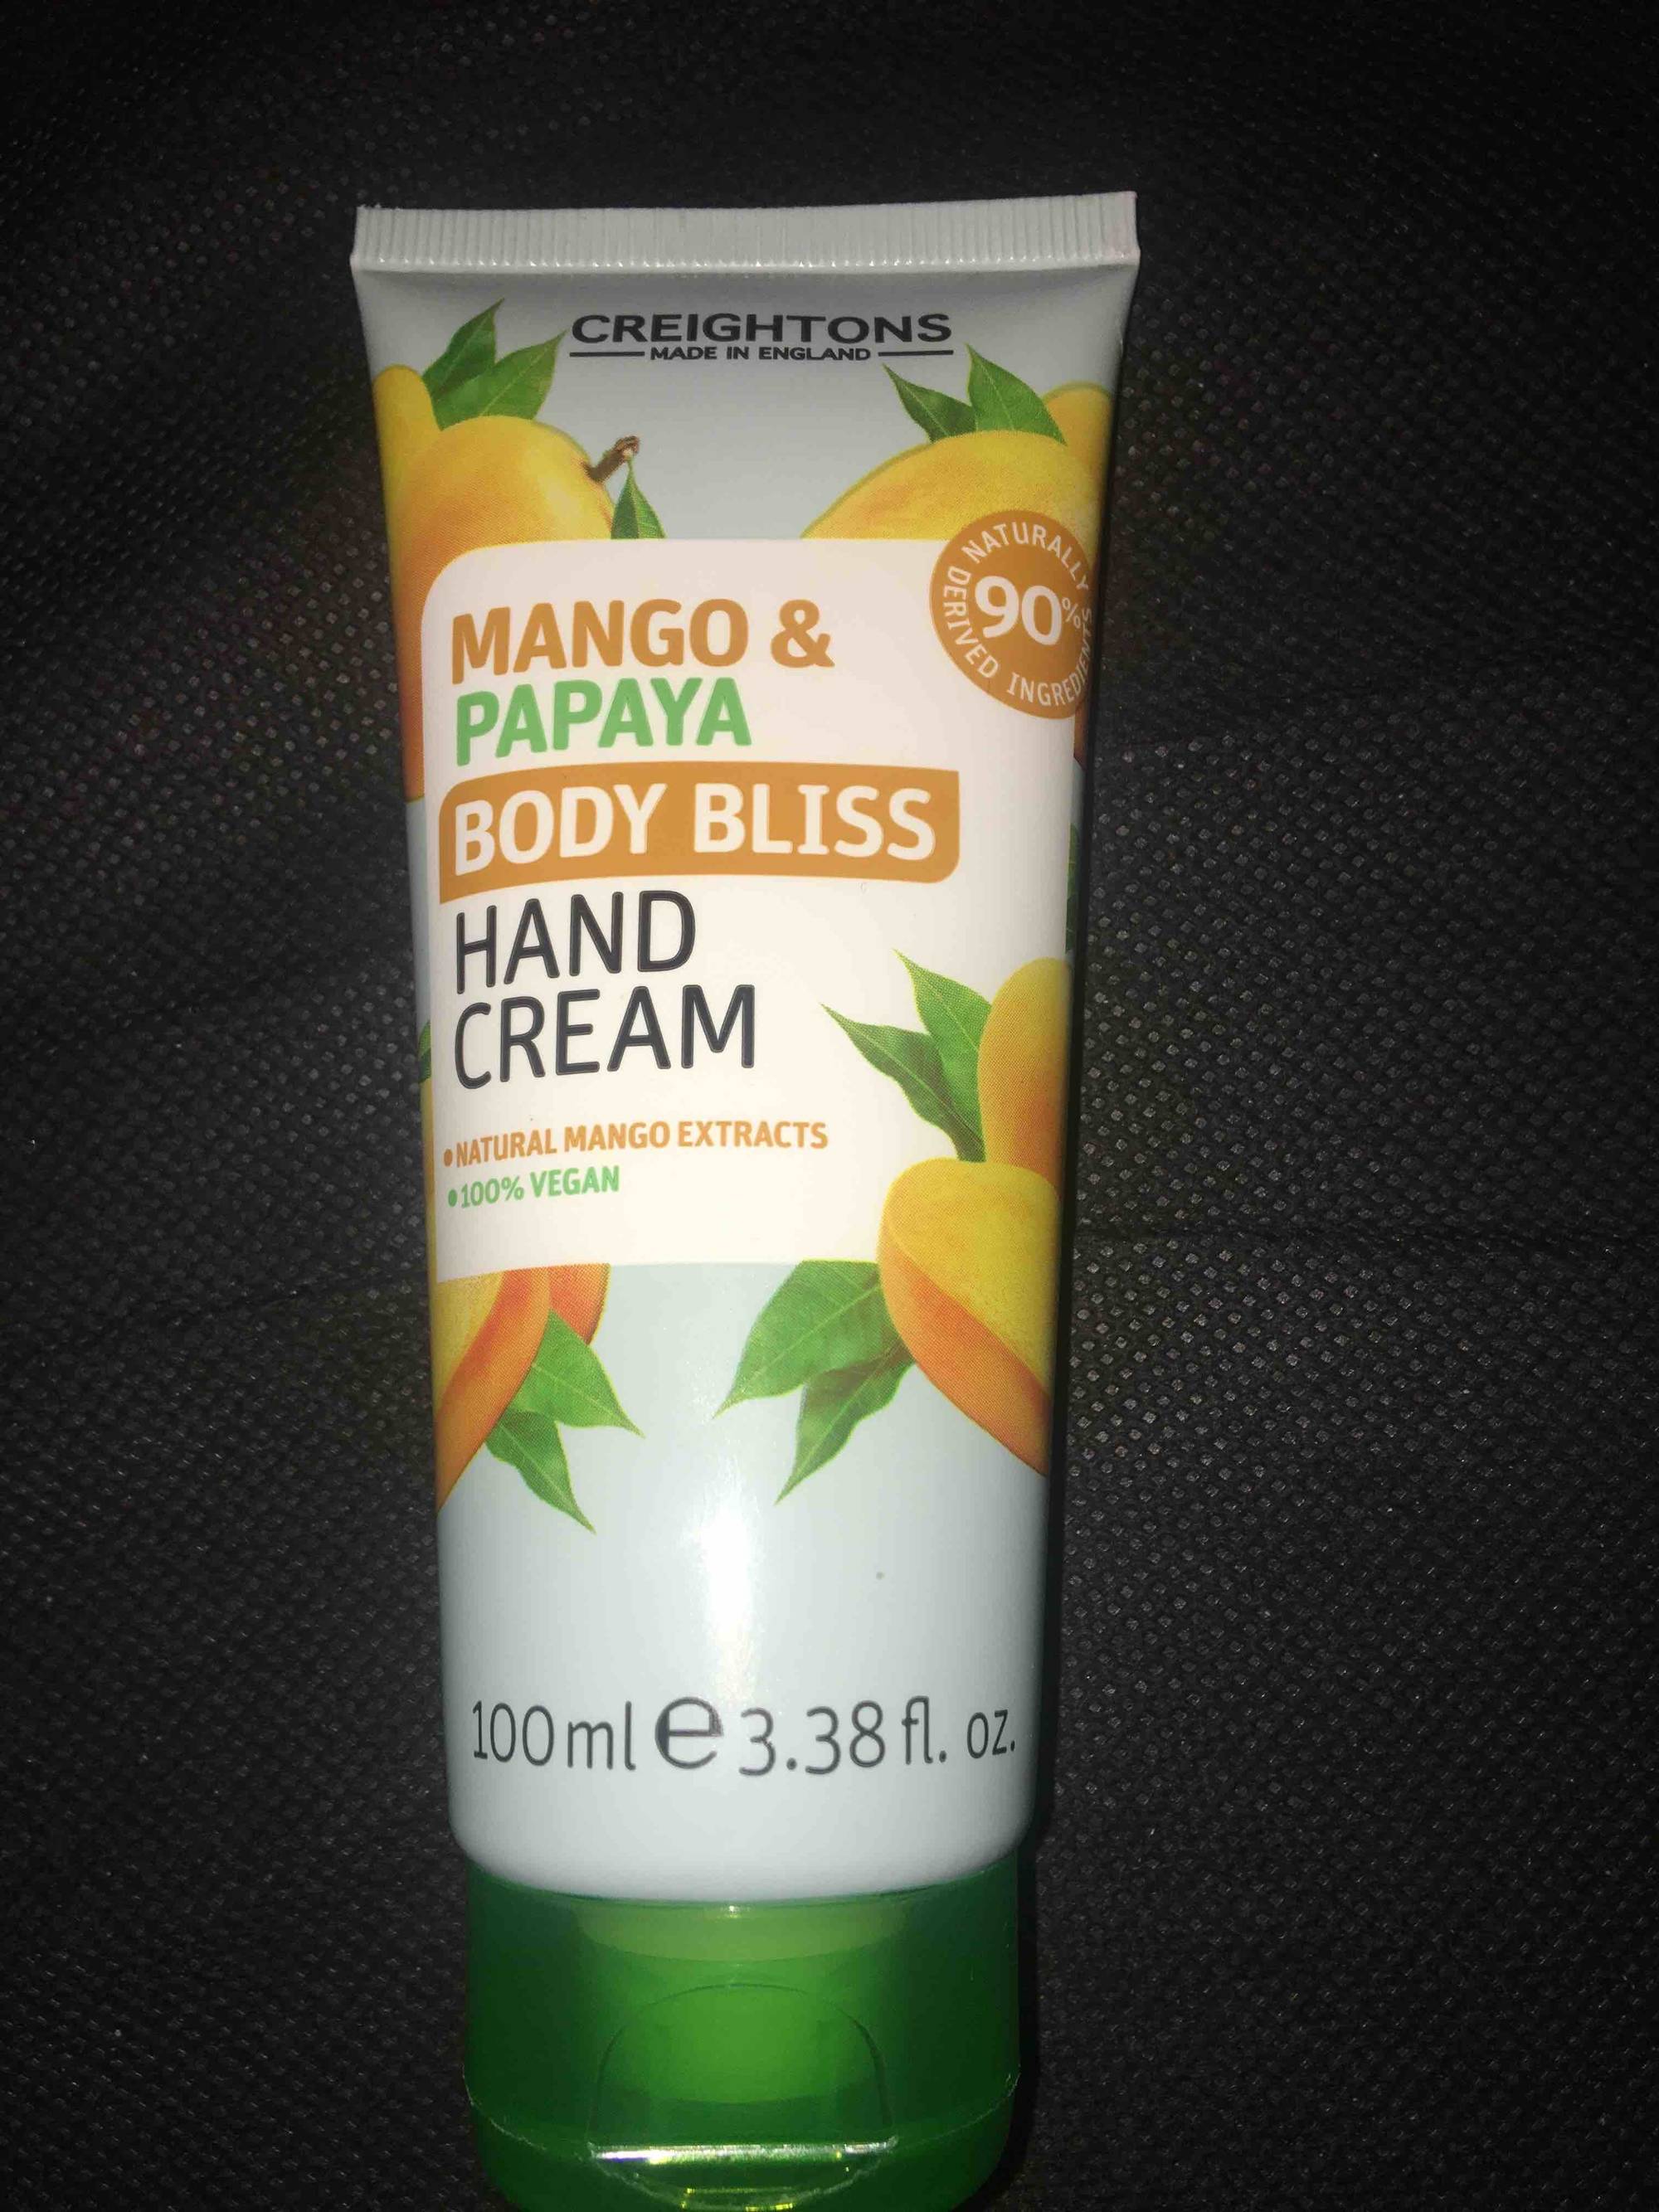 CREIGHTONS - Body bliss - Hand cream - Mango & papaya